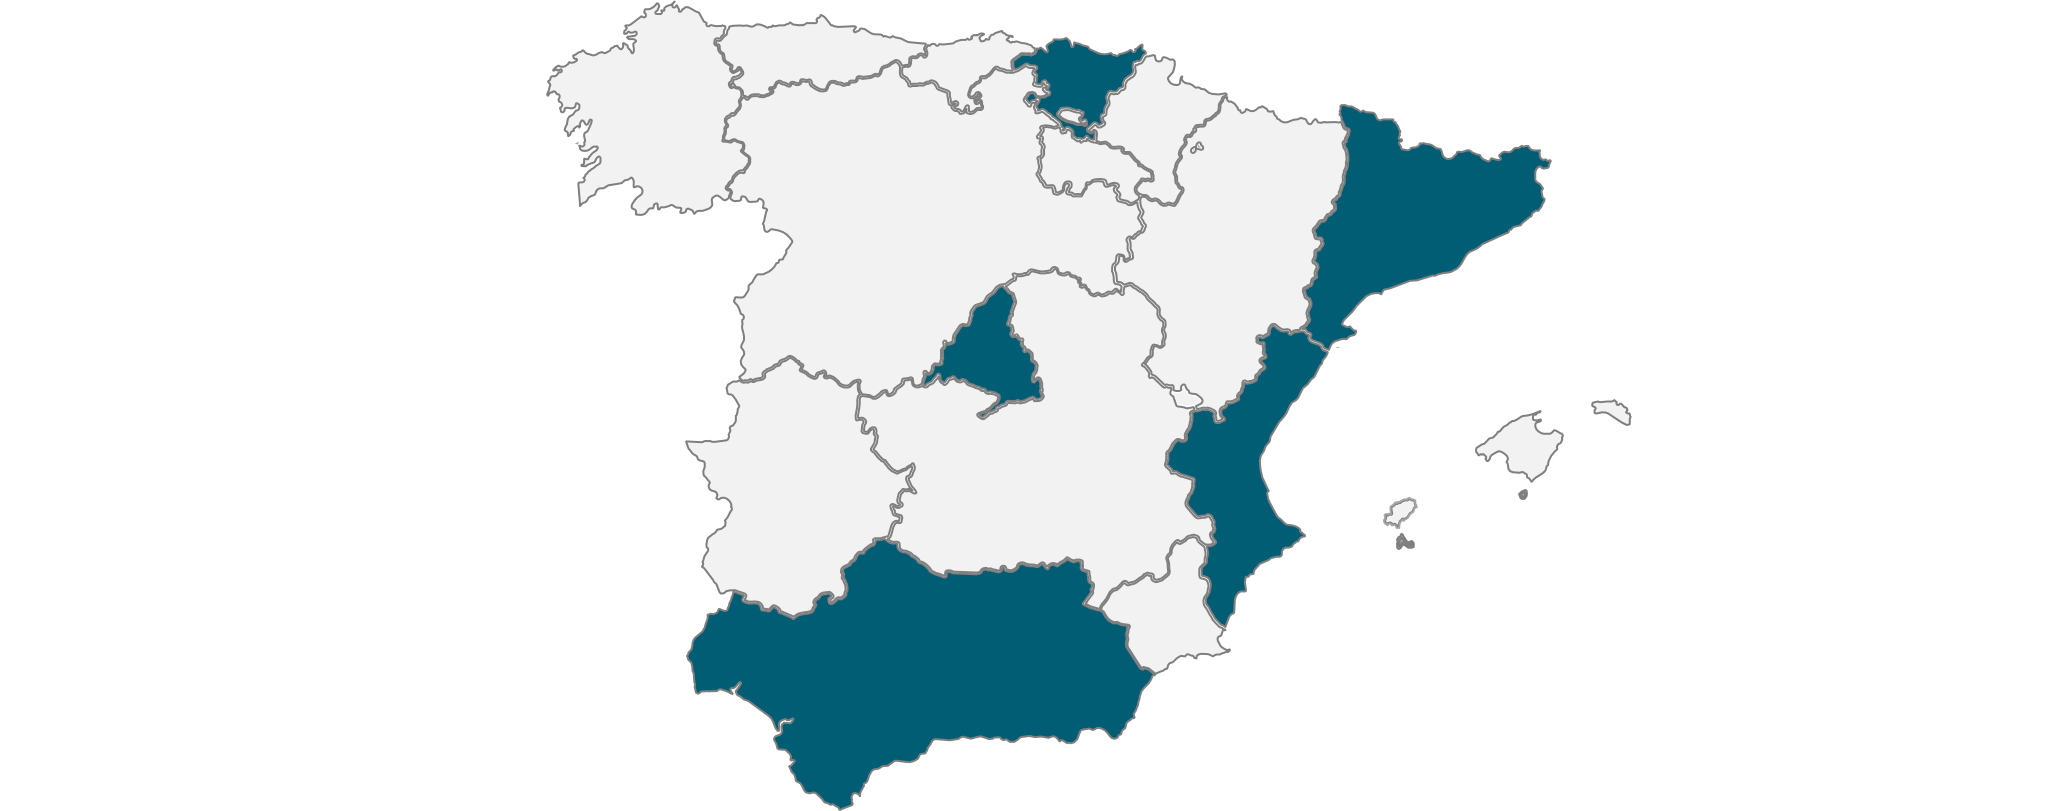 Mapa dels llocs amb més accidents laborals a Espanya al 2020